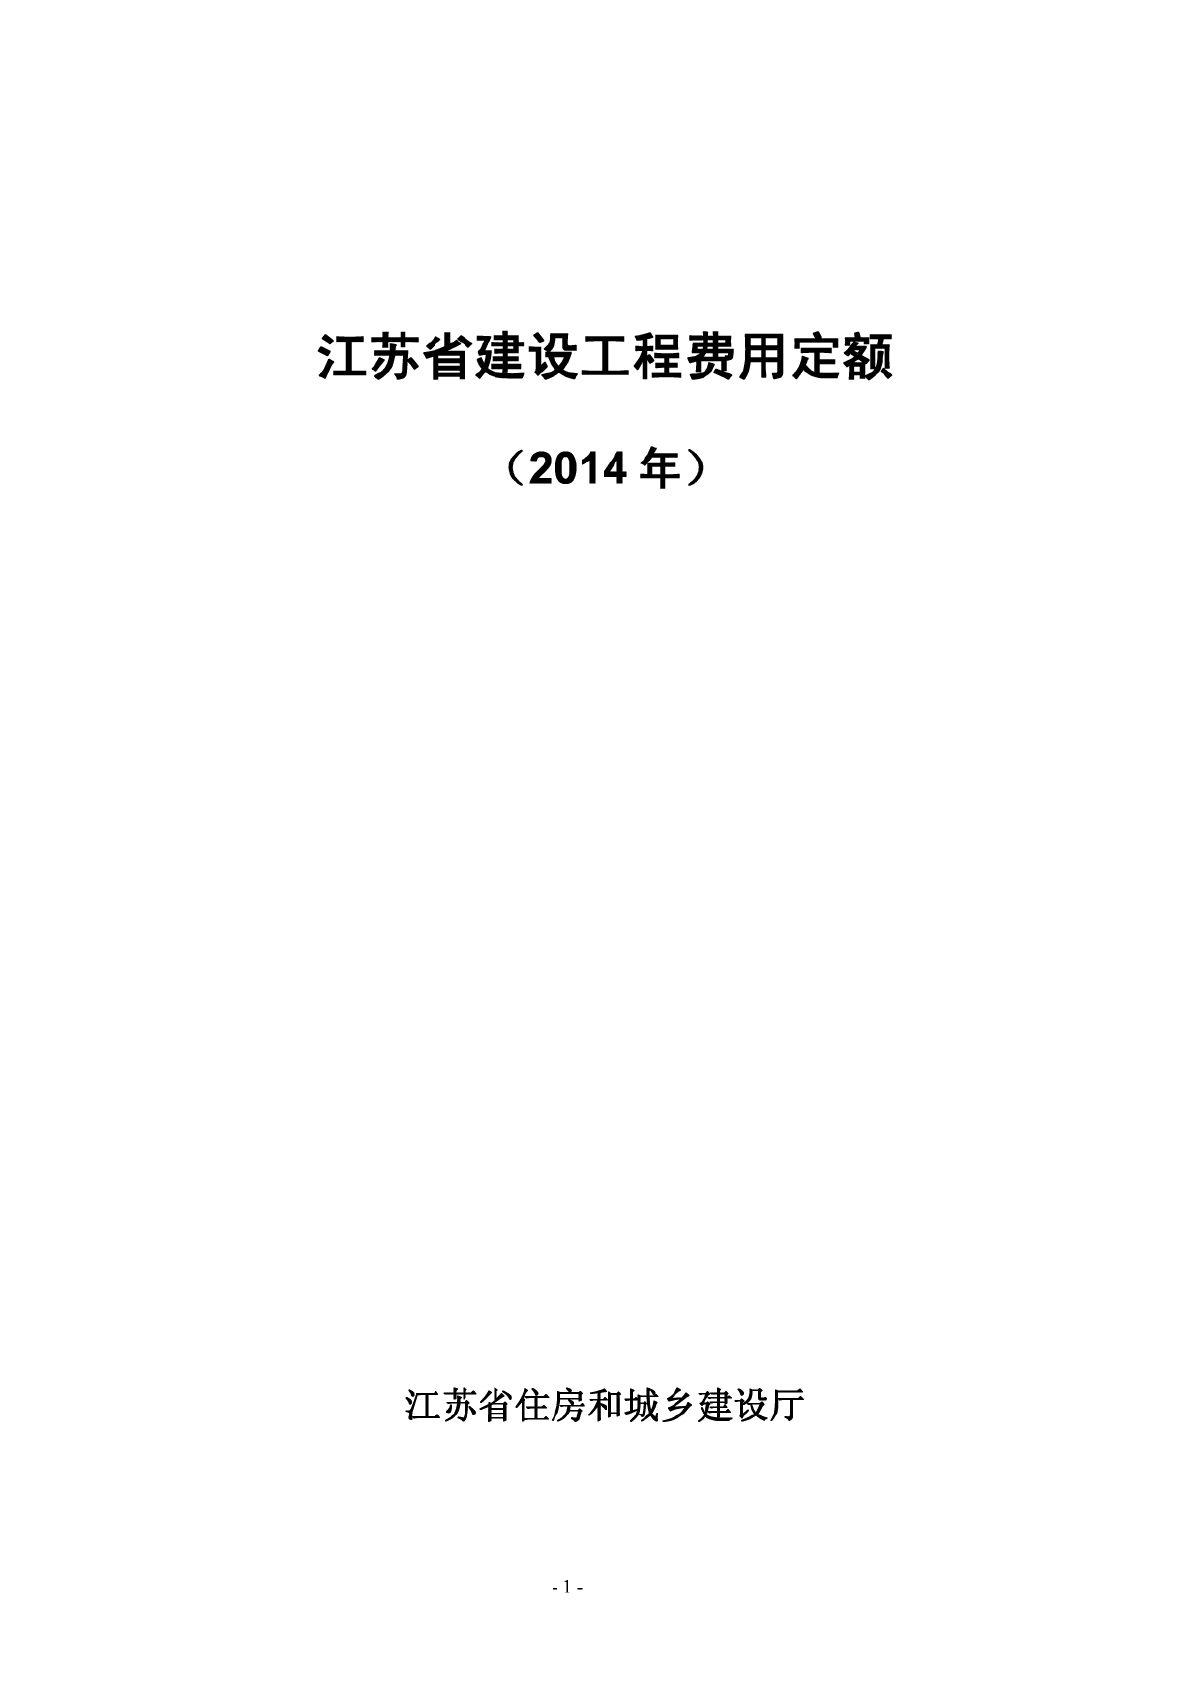 江苏省建筑工程费用定额2014